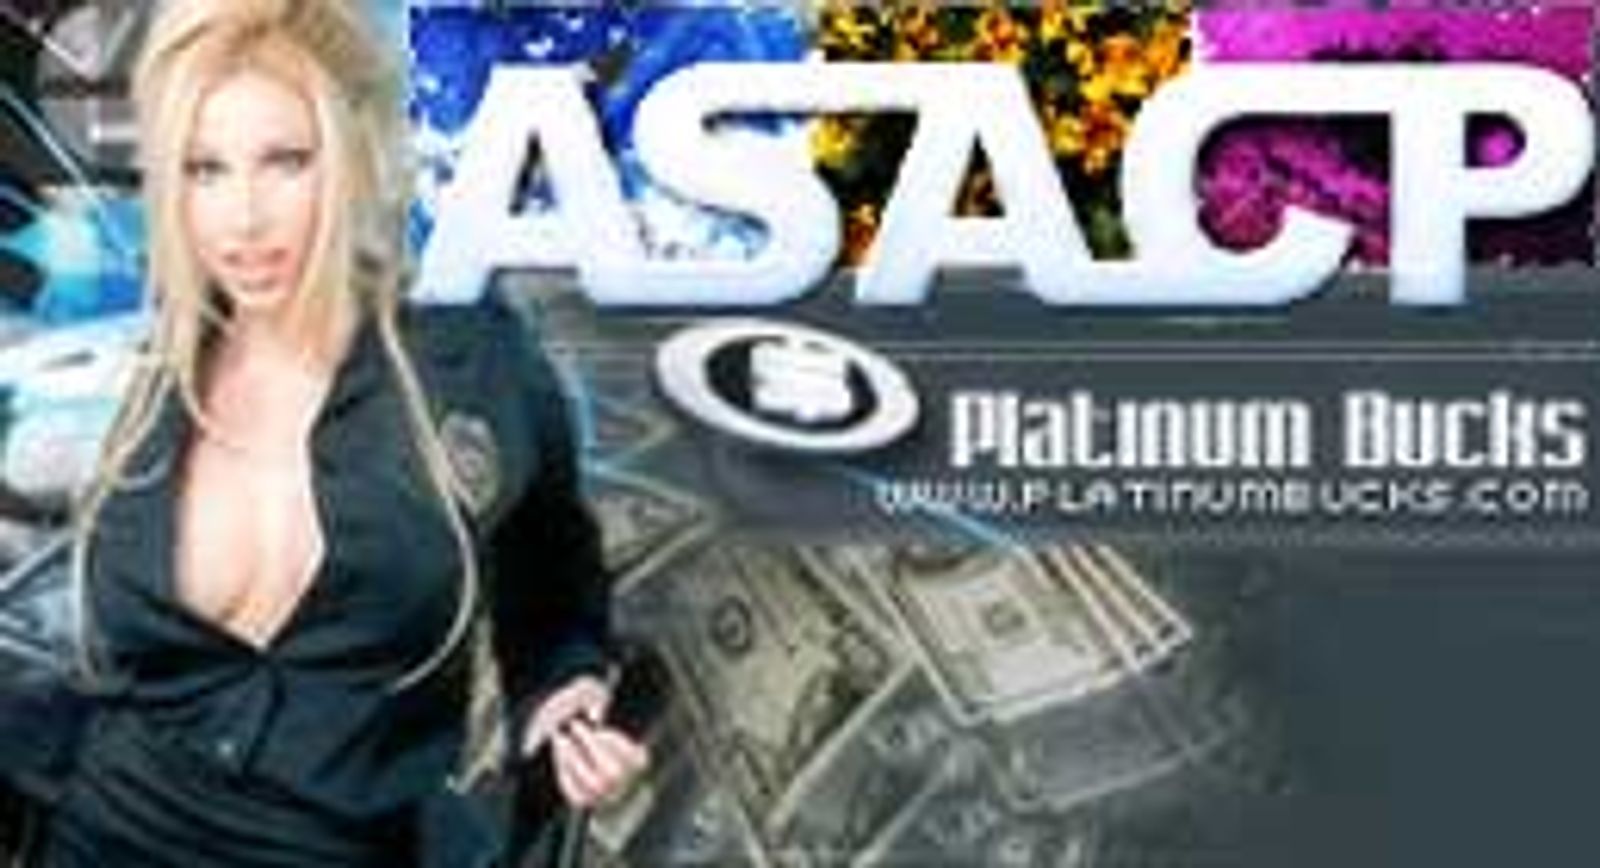 PlatinumBucks Joins ASACP As Corporate Sponsor